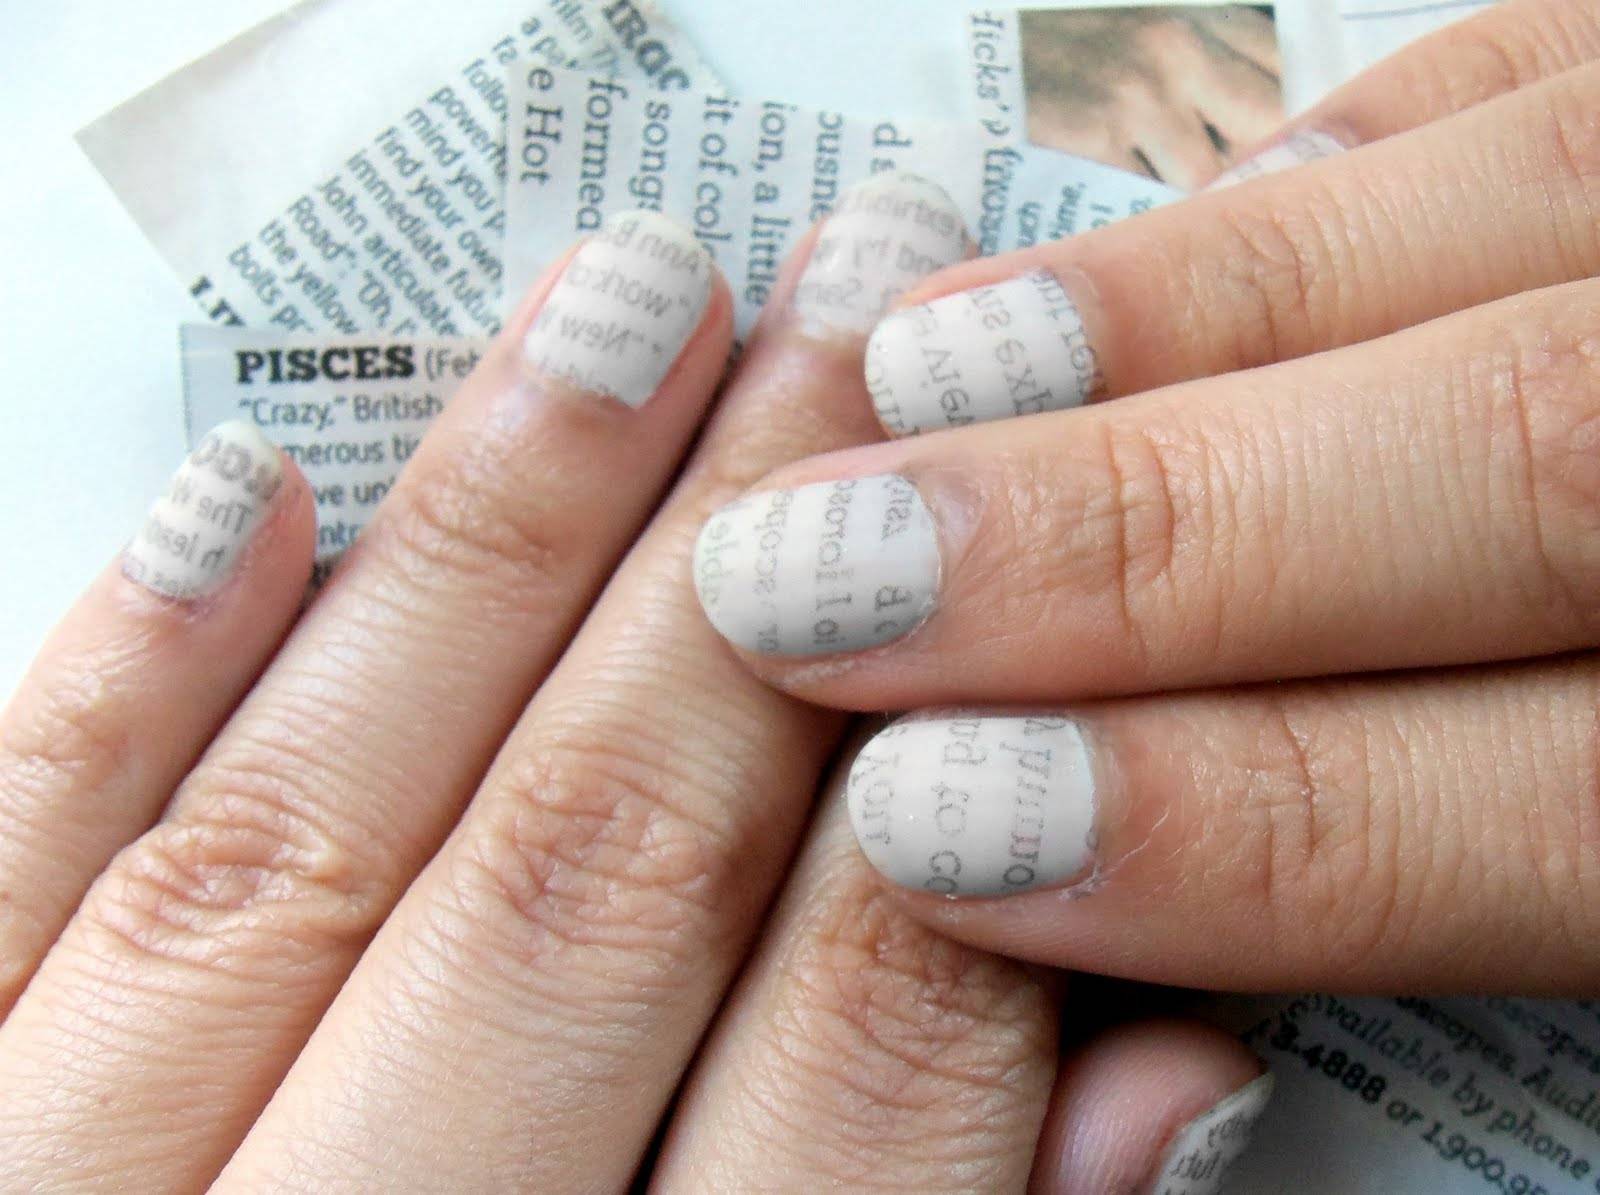 Как сделать маникюр на короткие ногти в домашних условиях. популярный дизайн и особенности маникюра на кроткие ногти дома - автор екатерина данилова - журнал женское мнение